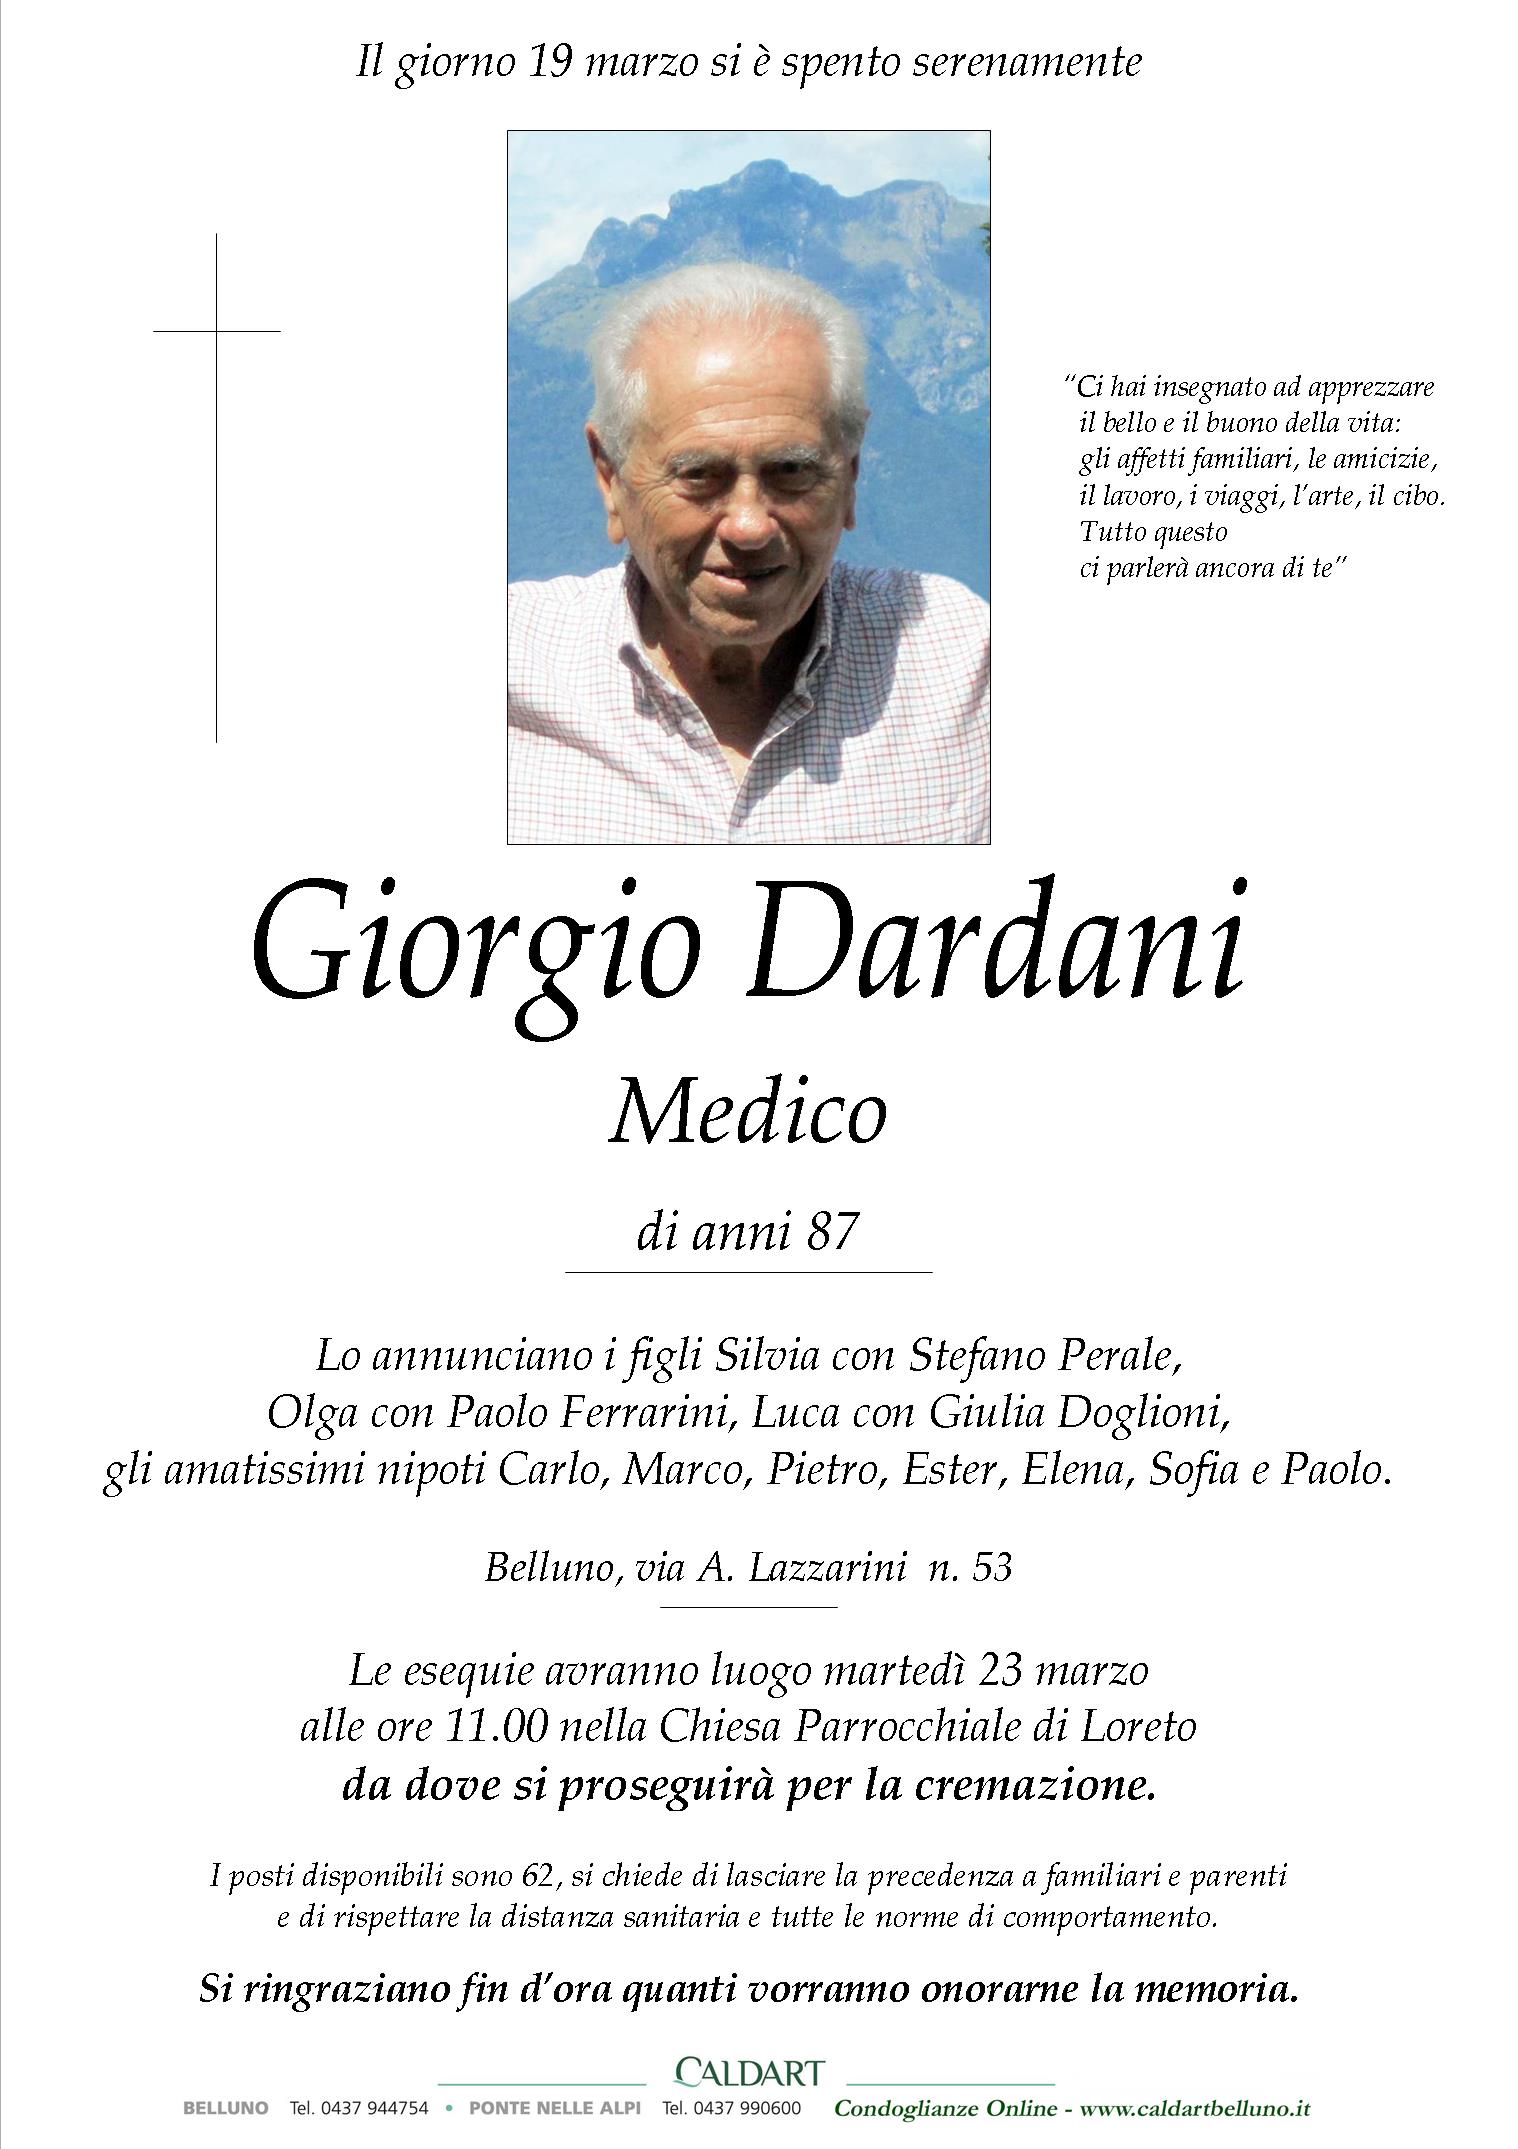 Dardani Giorgio